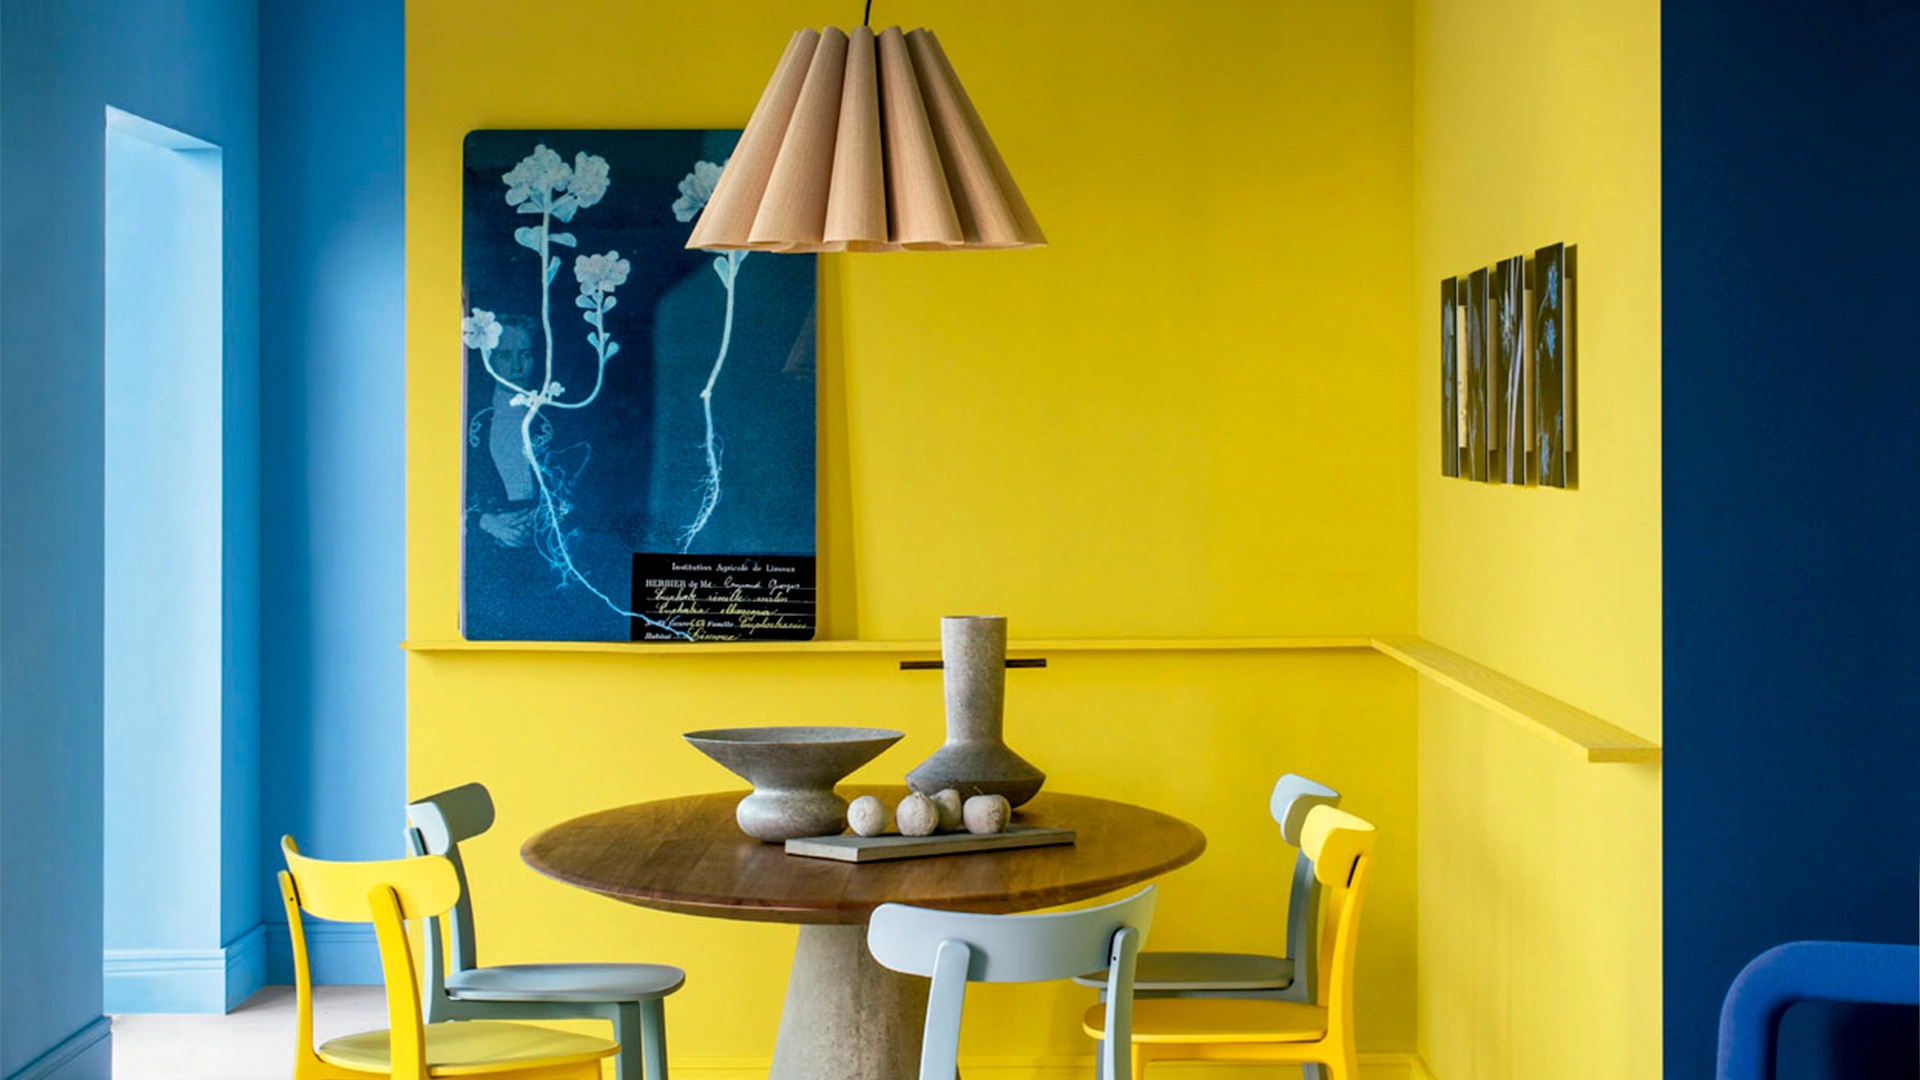 Ứng dụng phối màu tương trong thiết kế nội thất phòng ăn xanh - vàng | Nguồn ảnh: Internet.